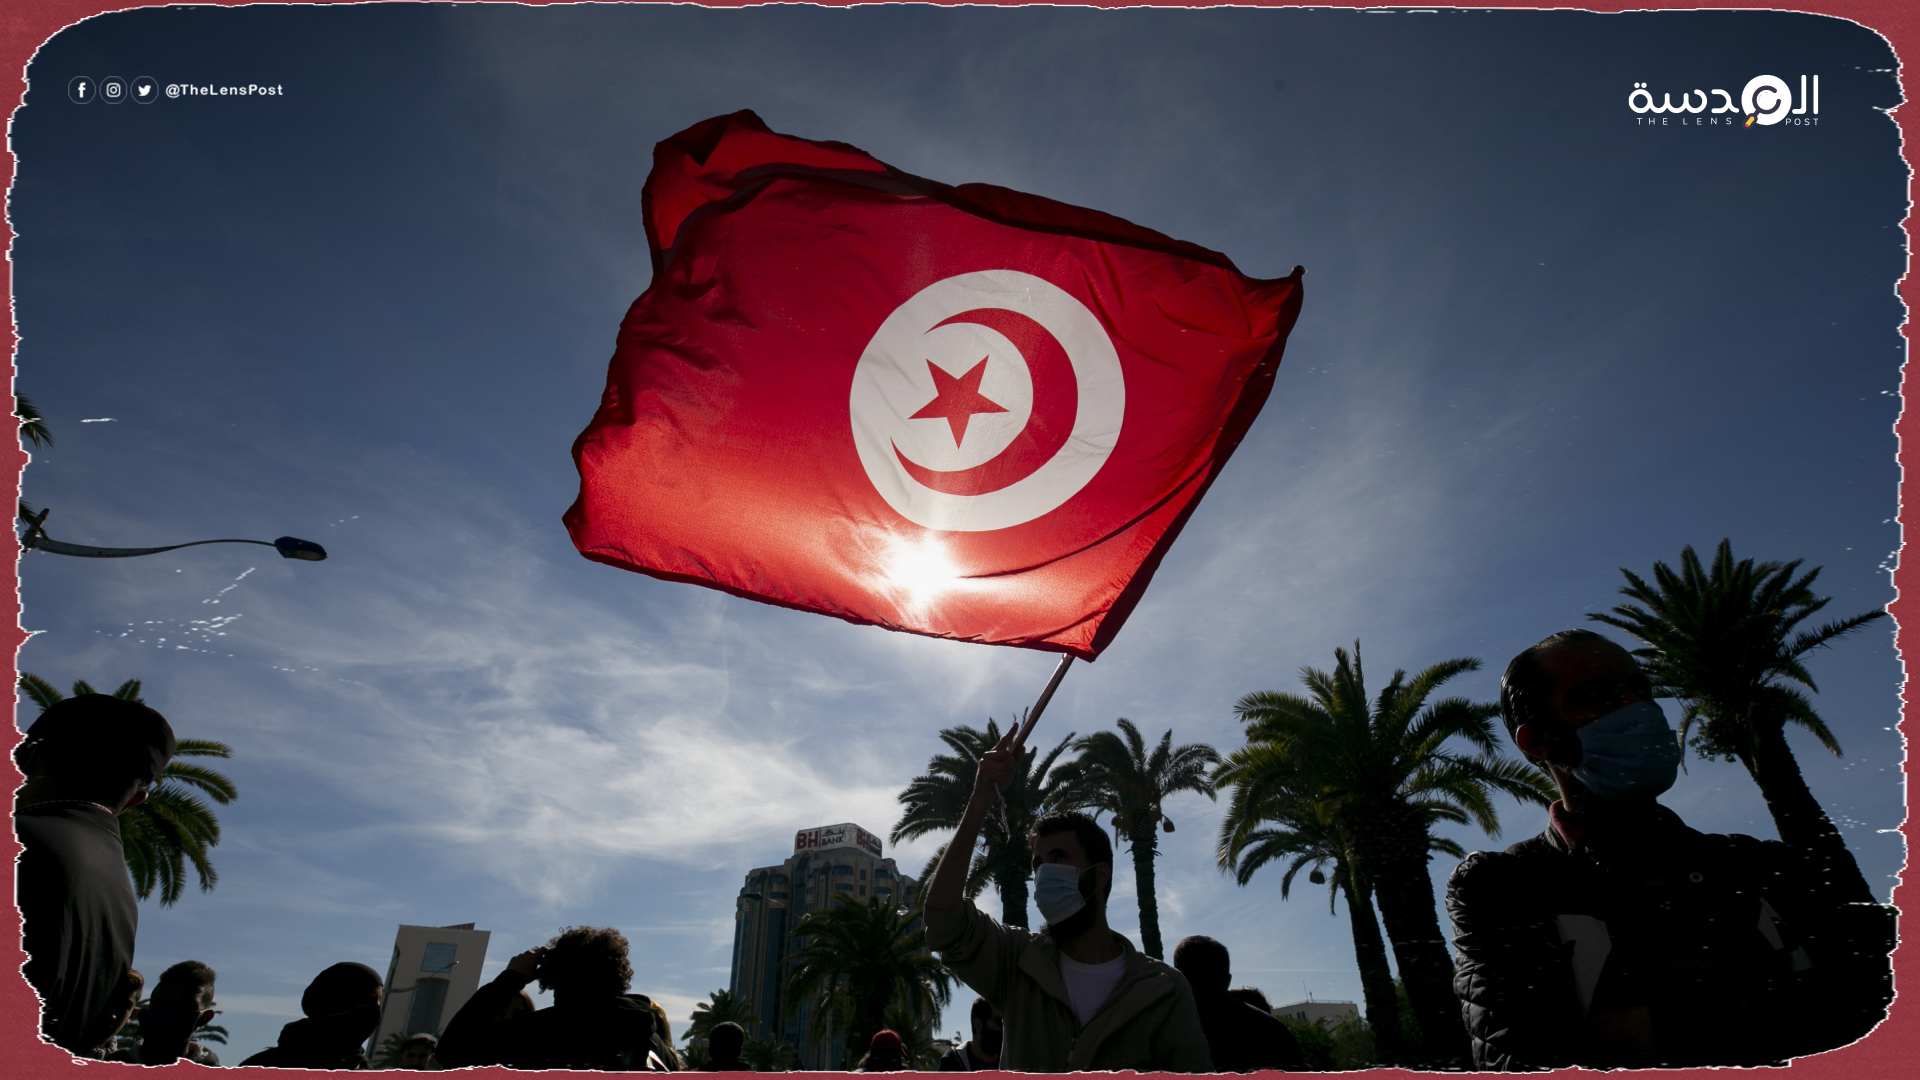 بعد تواتر أنباء عن تطبيع خفي.. تونس تنفي مبادلات تجارية مع الاحتلال